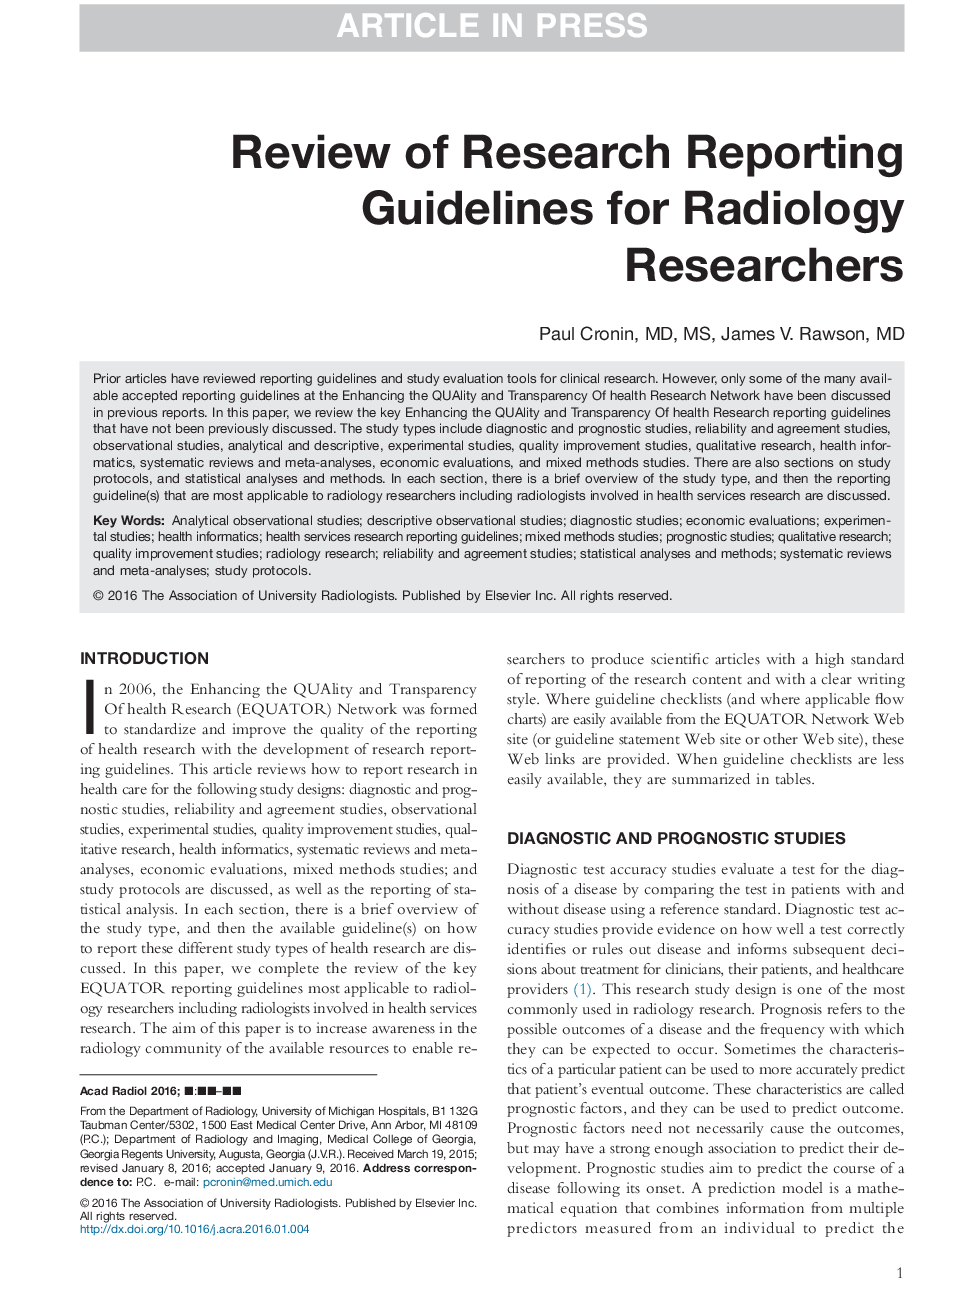 مرور دستورالعمل های گزارشگری تحقیق برای محققان رادیولوژی 